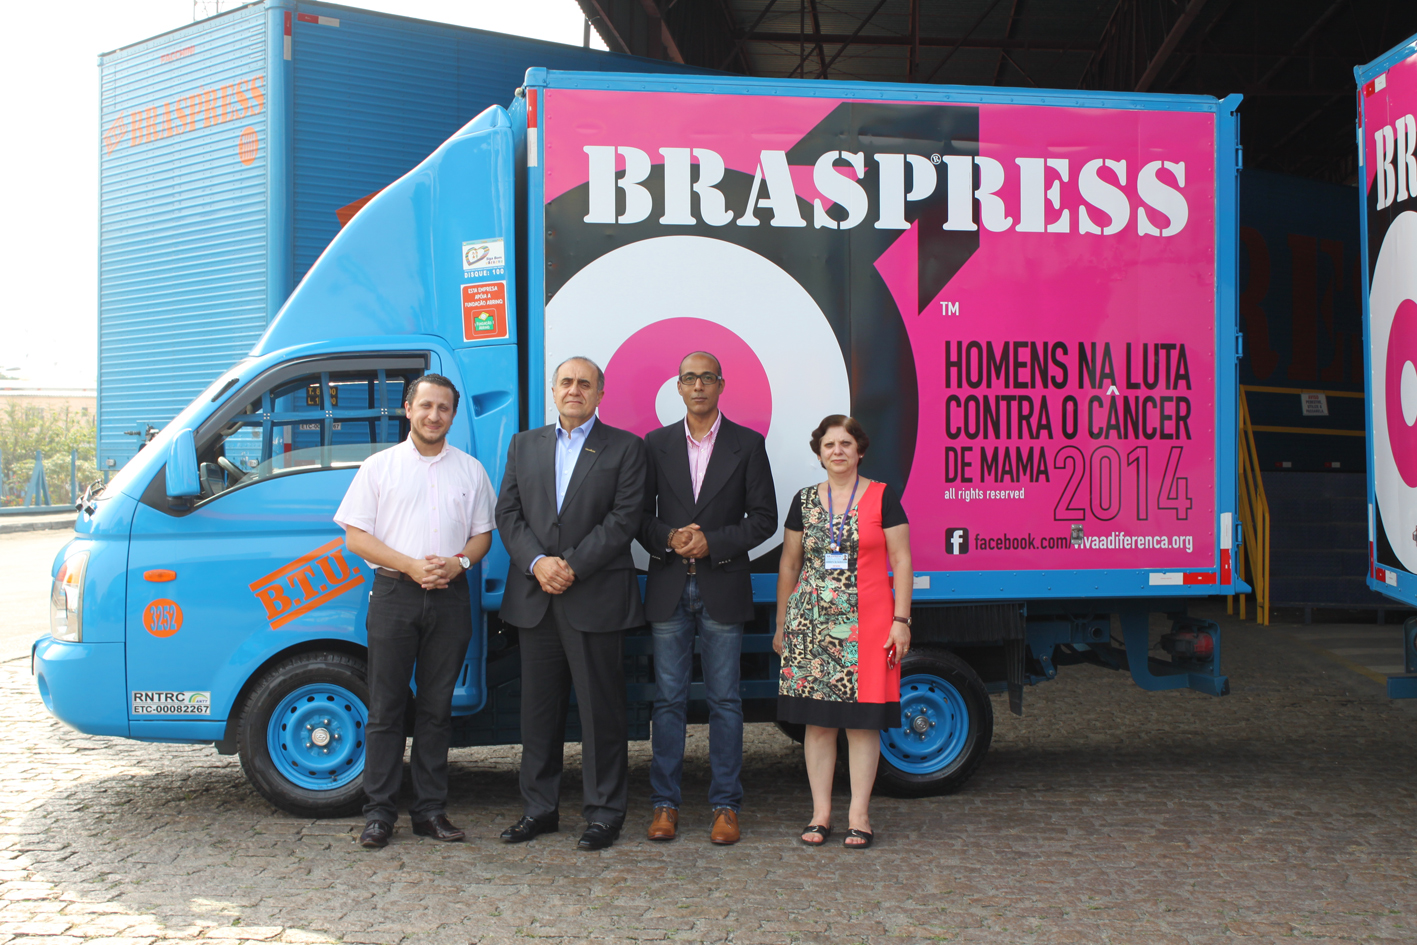 Braspress apoia campanha ‘’Homens na luta contra o câncer de mama’’